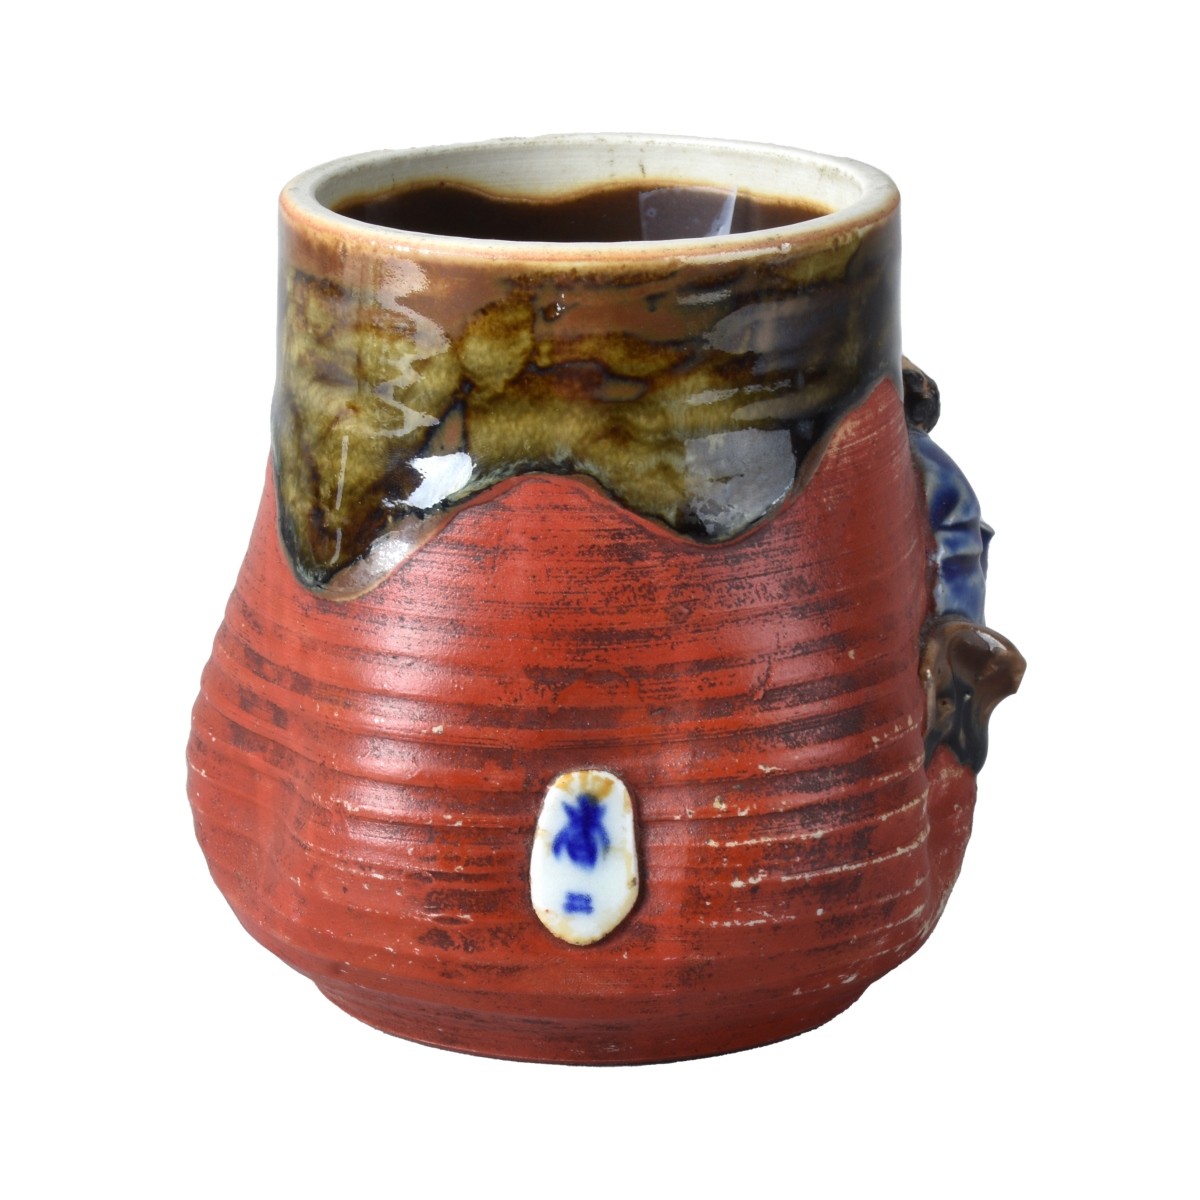 Antique Japanese Sumida Gawa Jar